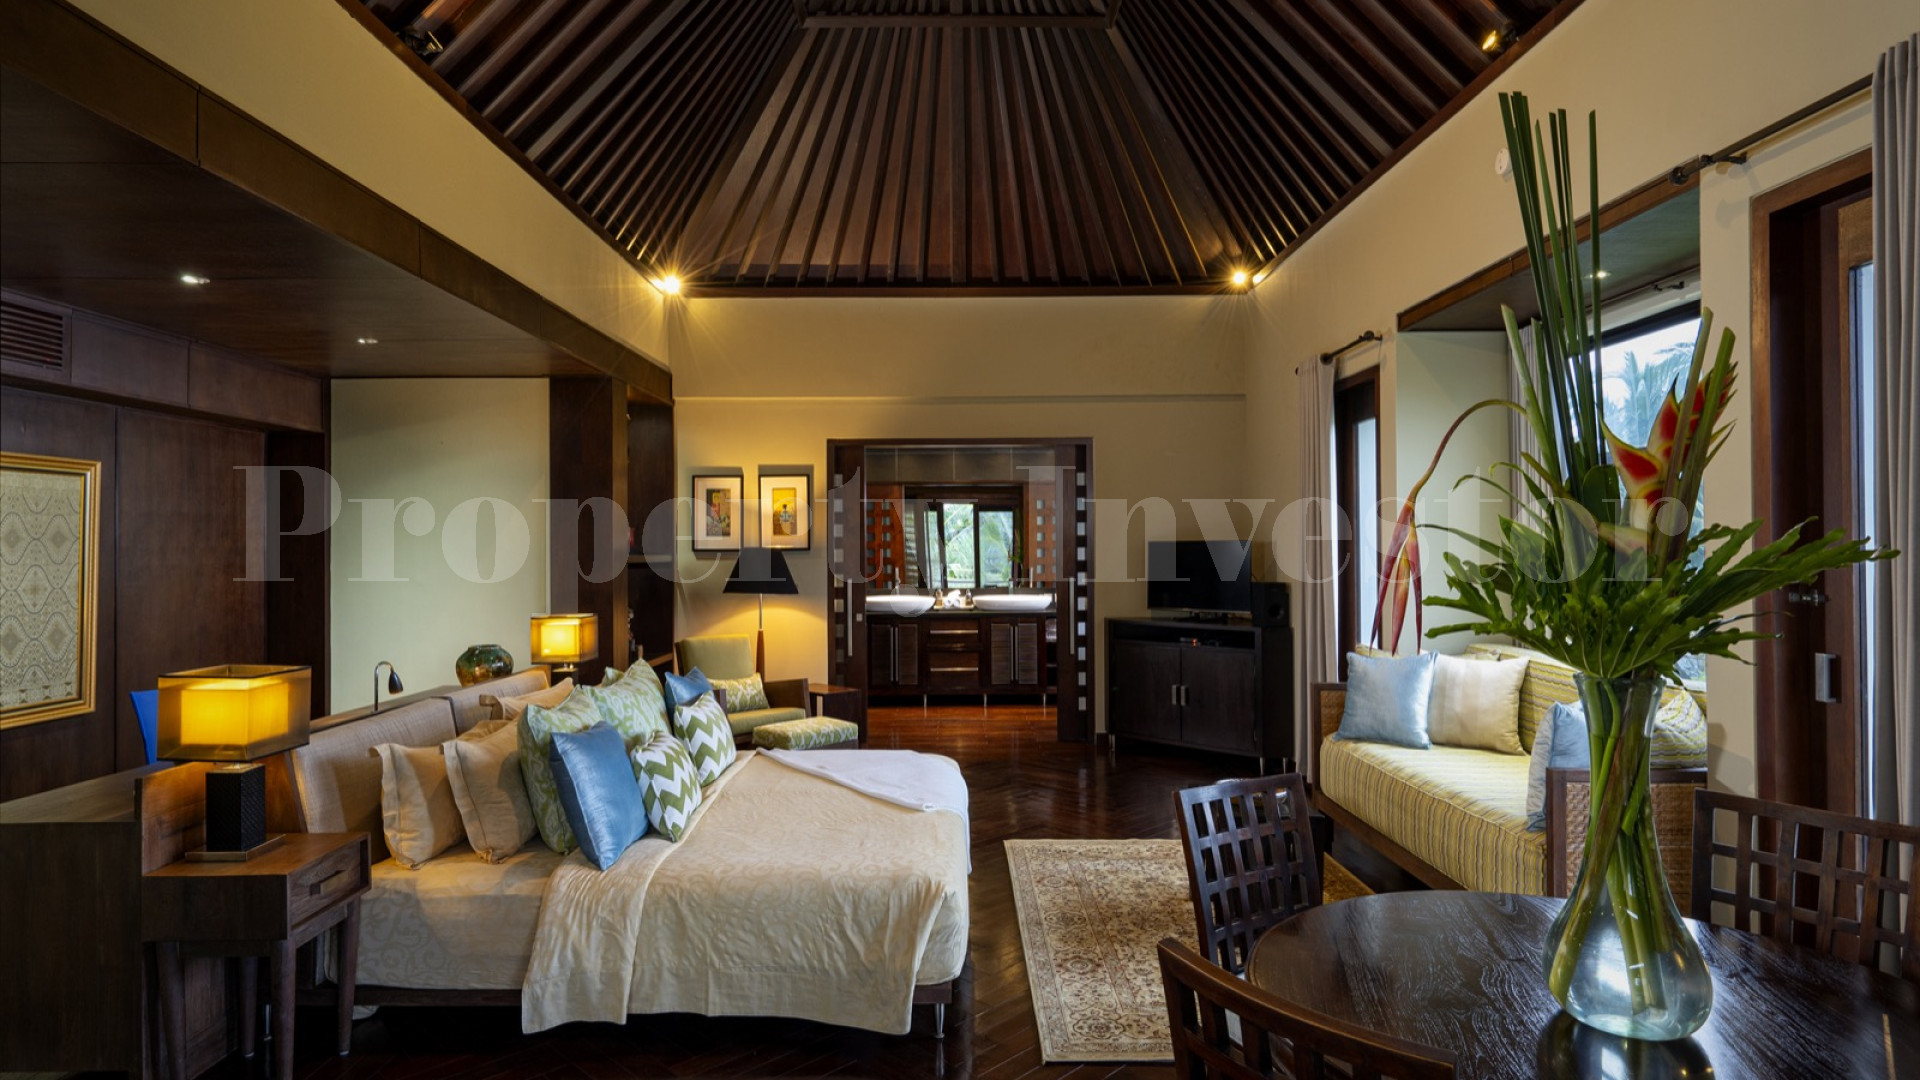 Продаётся отмеченный наградами бутик отель на 8 номеров и ресторан изысканной кухни в Убуде, Бали